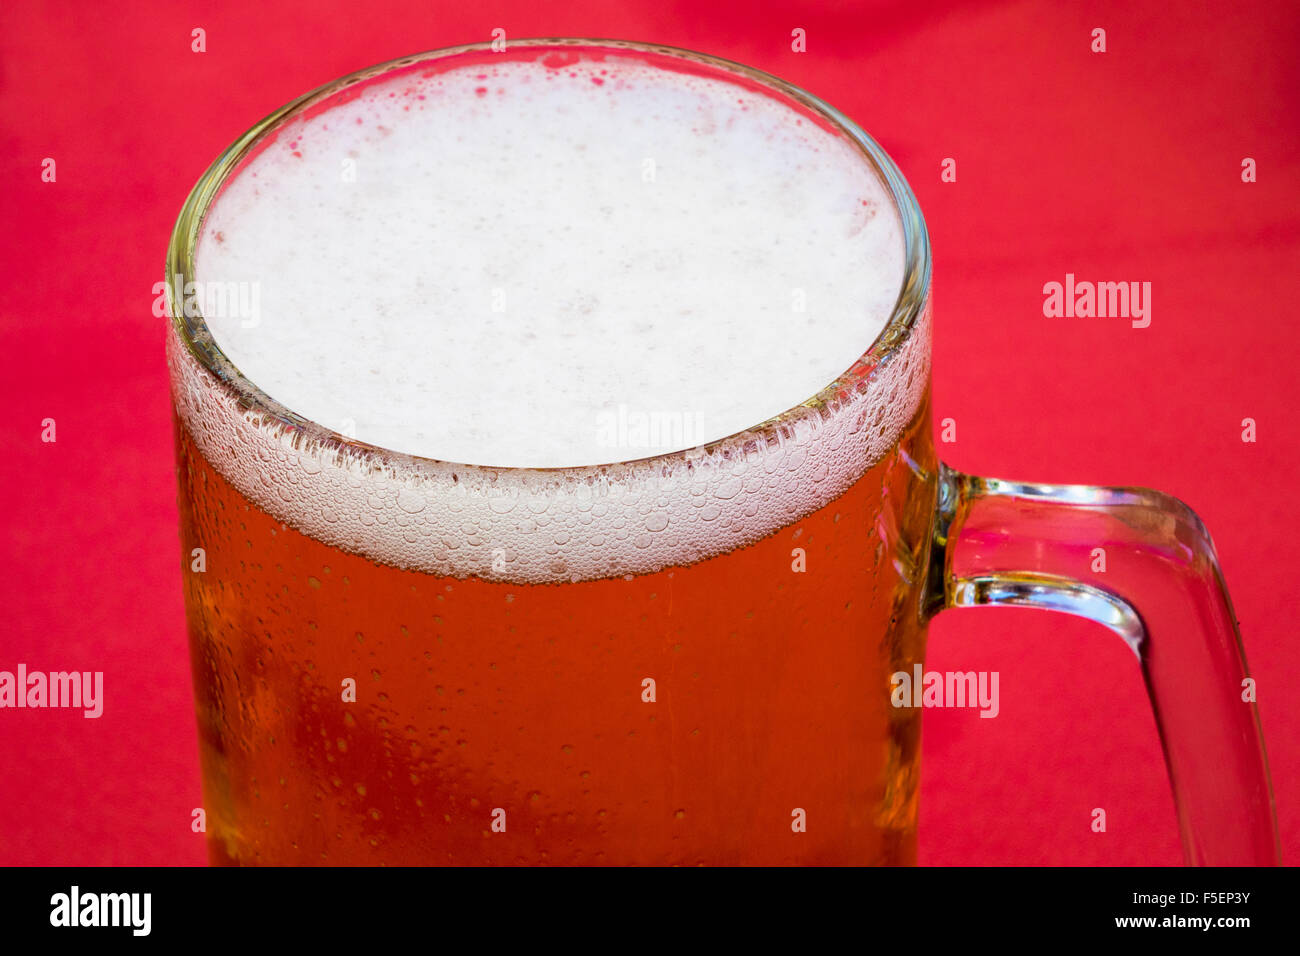 La bière dans une chope en verre Banque D'Images